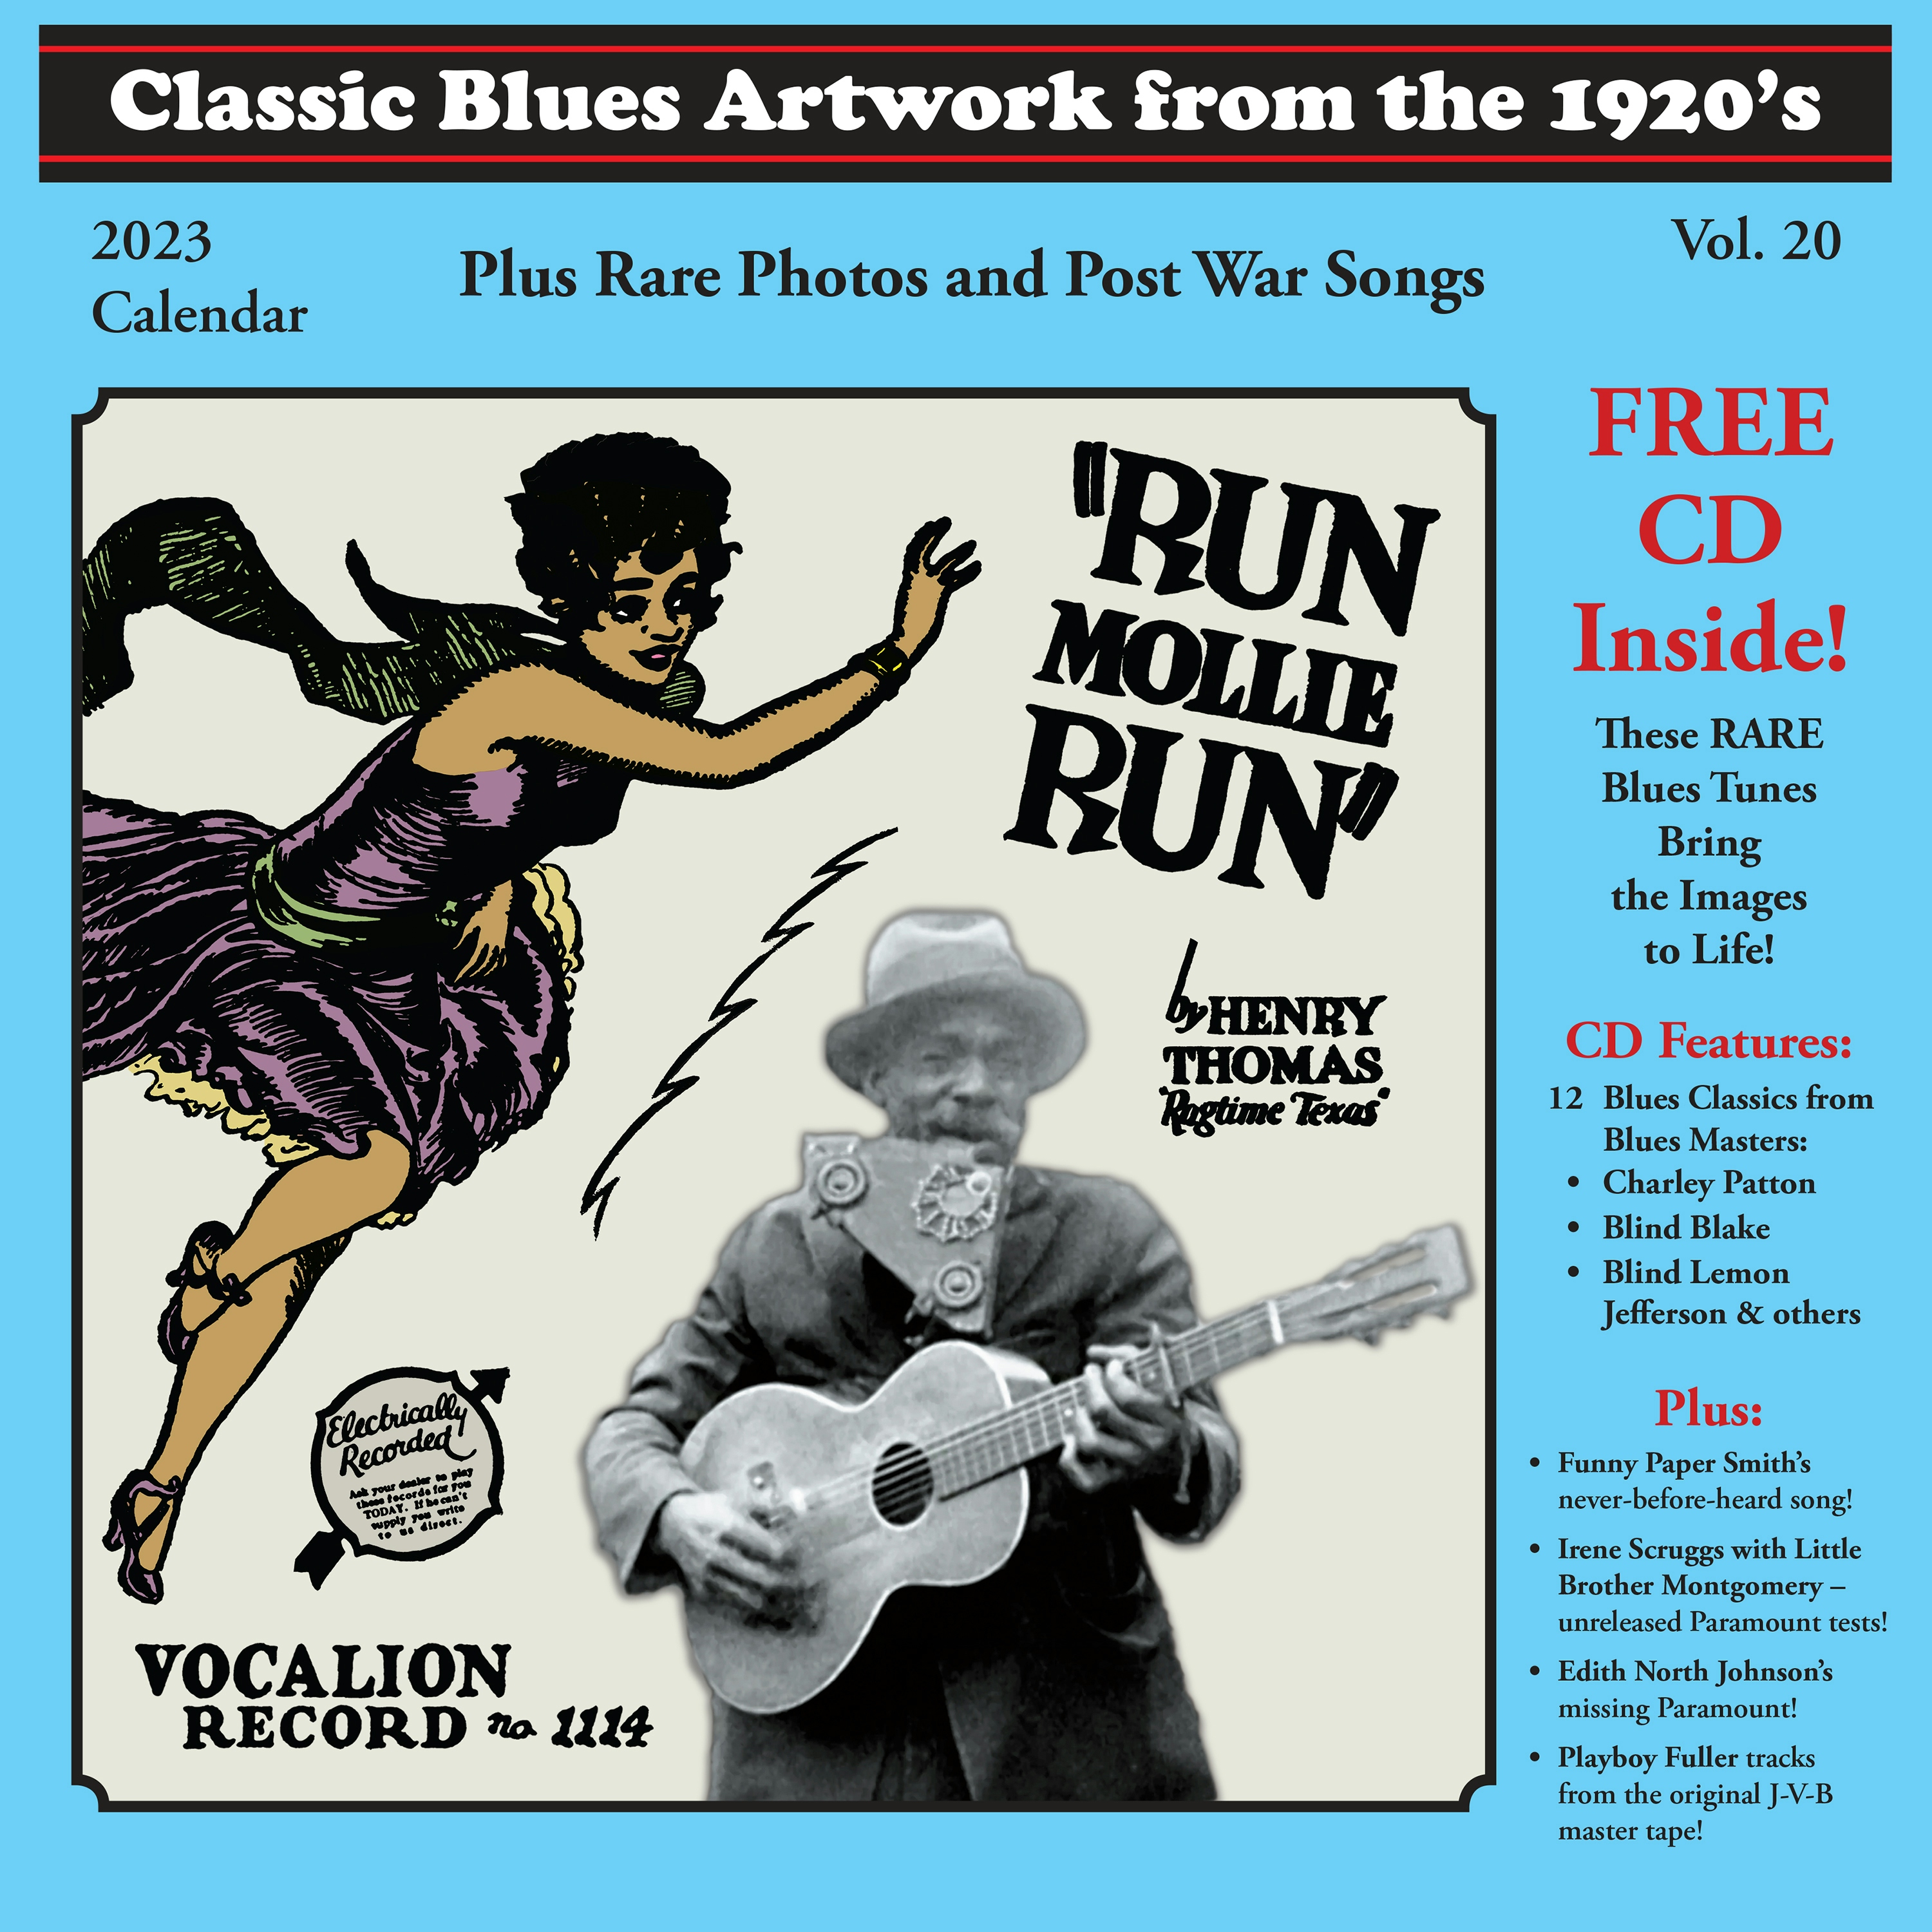 Album artwork for Classic Blues Artwork From The 1920's - 1950's Vol 20  by Classic Blues Artwork From the 1920's - 1950's Vol 20 - Calendar